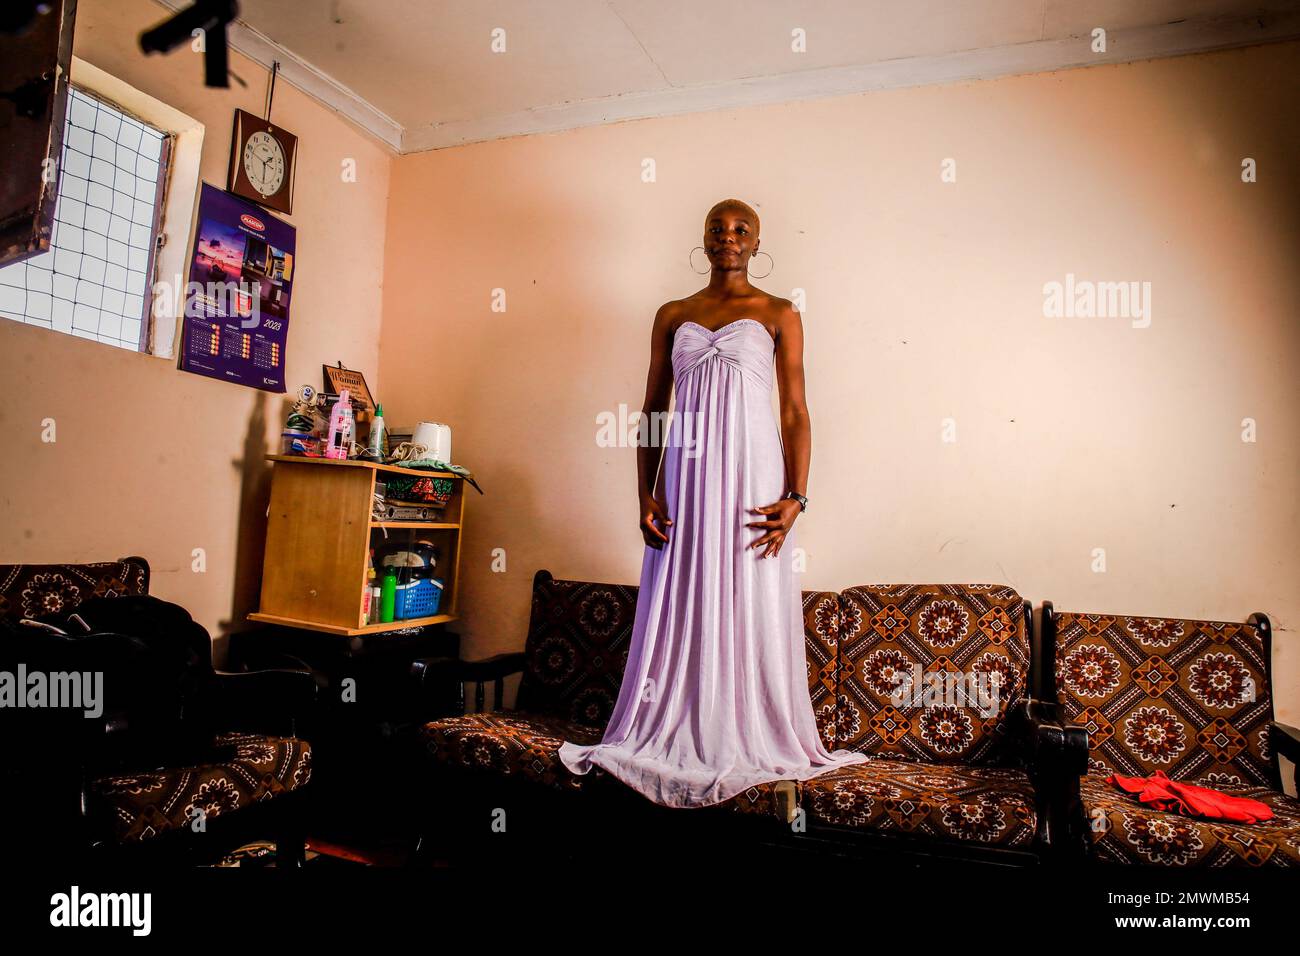 La modelo Risper Atieno de 23 años posa durante un proyecto fotográfico  Jóvenes en sus habitaciones en el barrio de Kibera. Los jóvenes kenianos  son conducidos a la competencia de tener sus